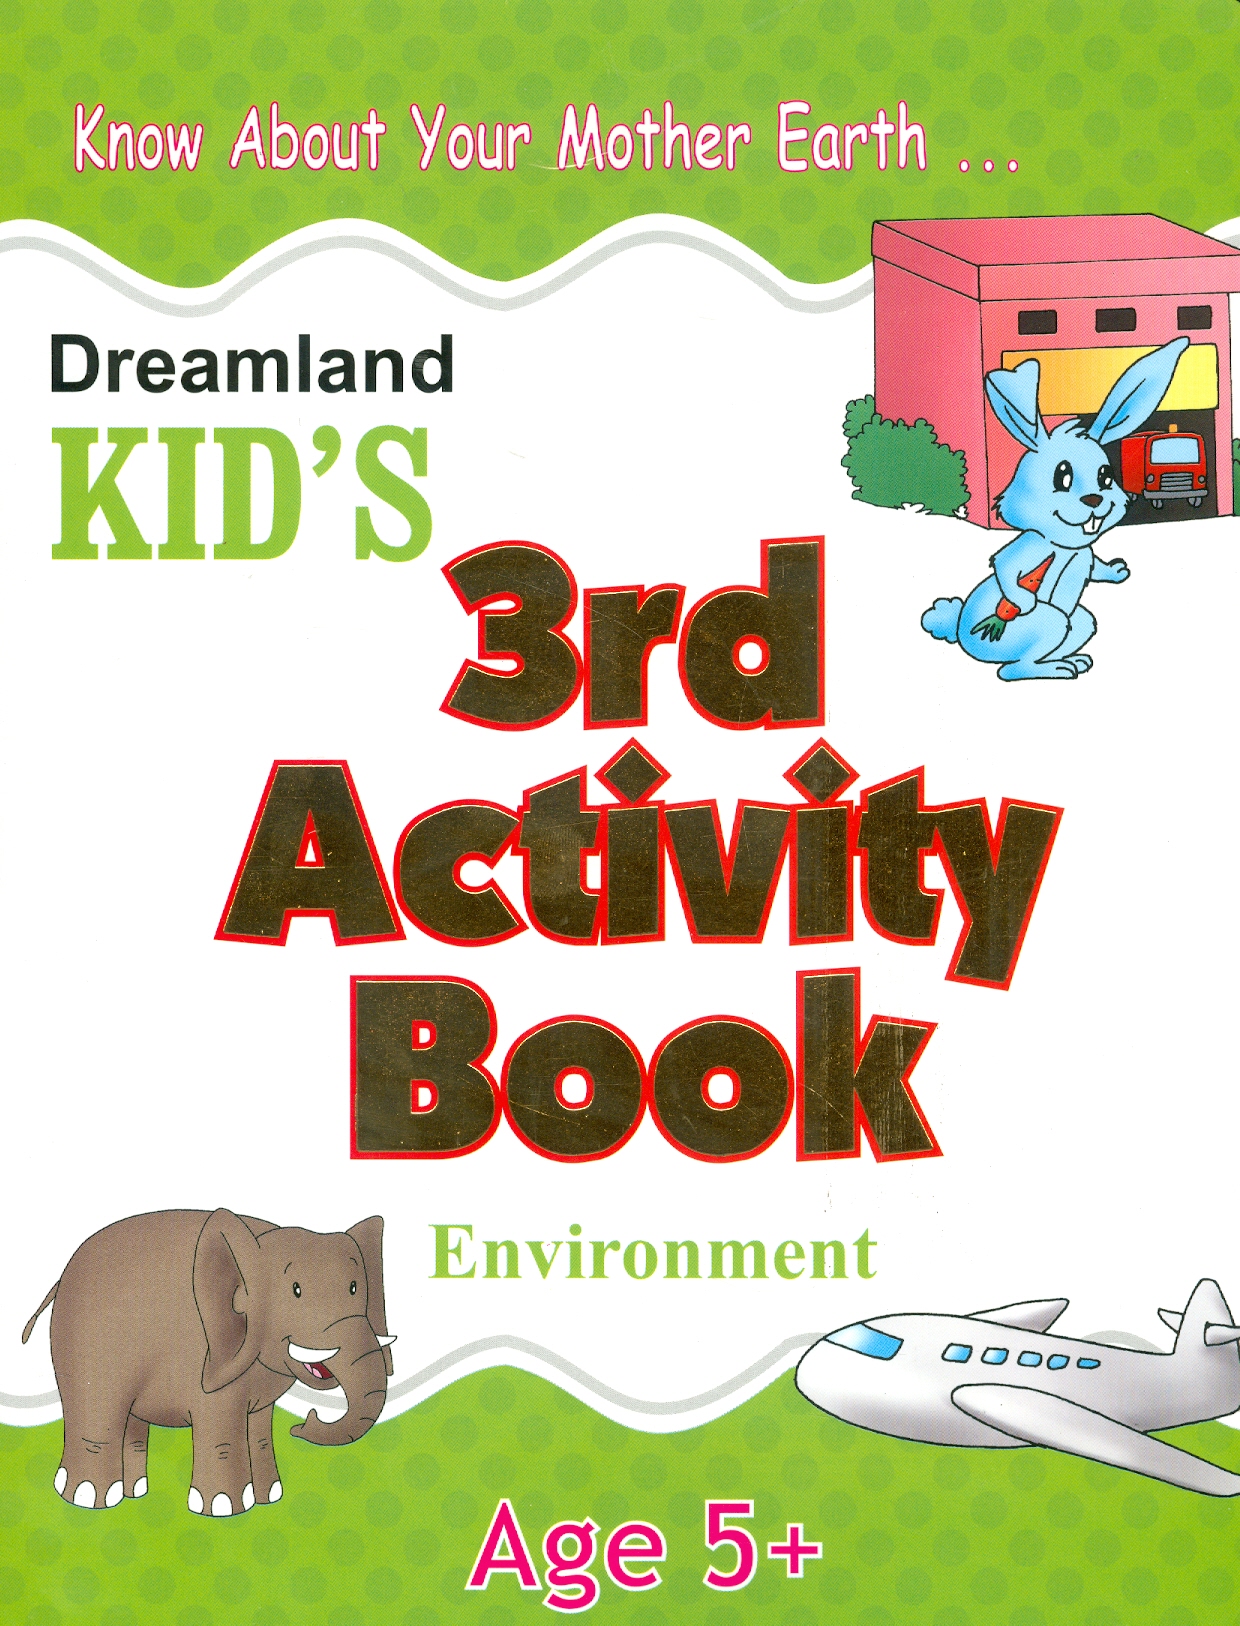 Kid's 3rd Activity Book Environment - Age 5+ (Các Hoạt Động Môi Trường Cho Trẻ 5+: Thiên Nhiên Diệu Kỳ)